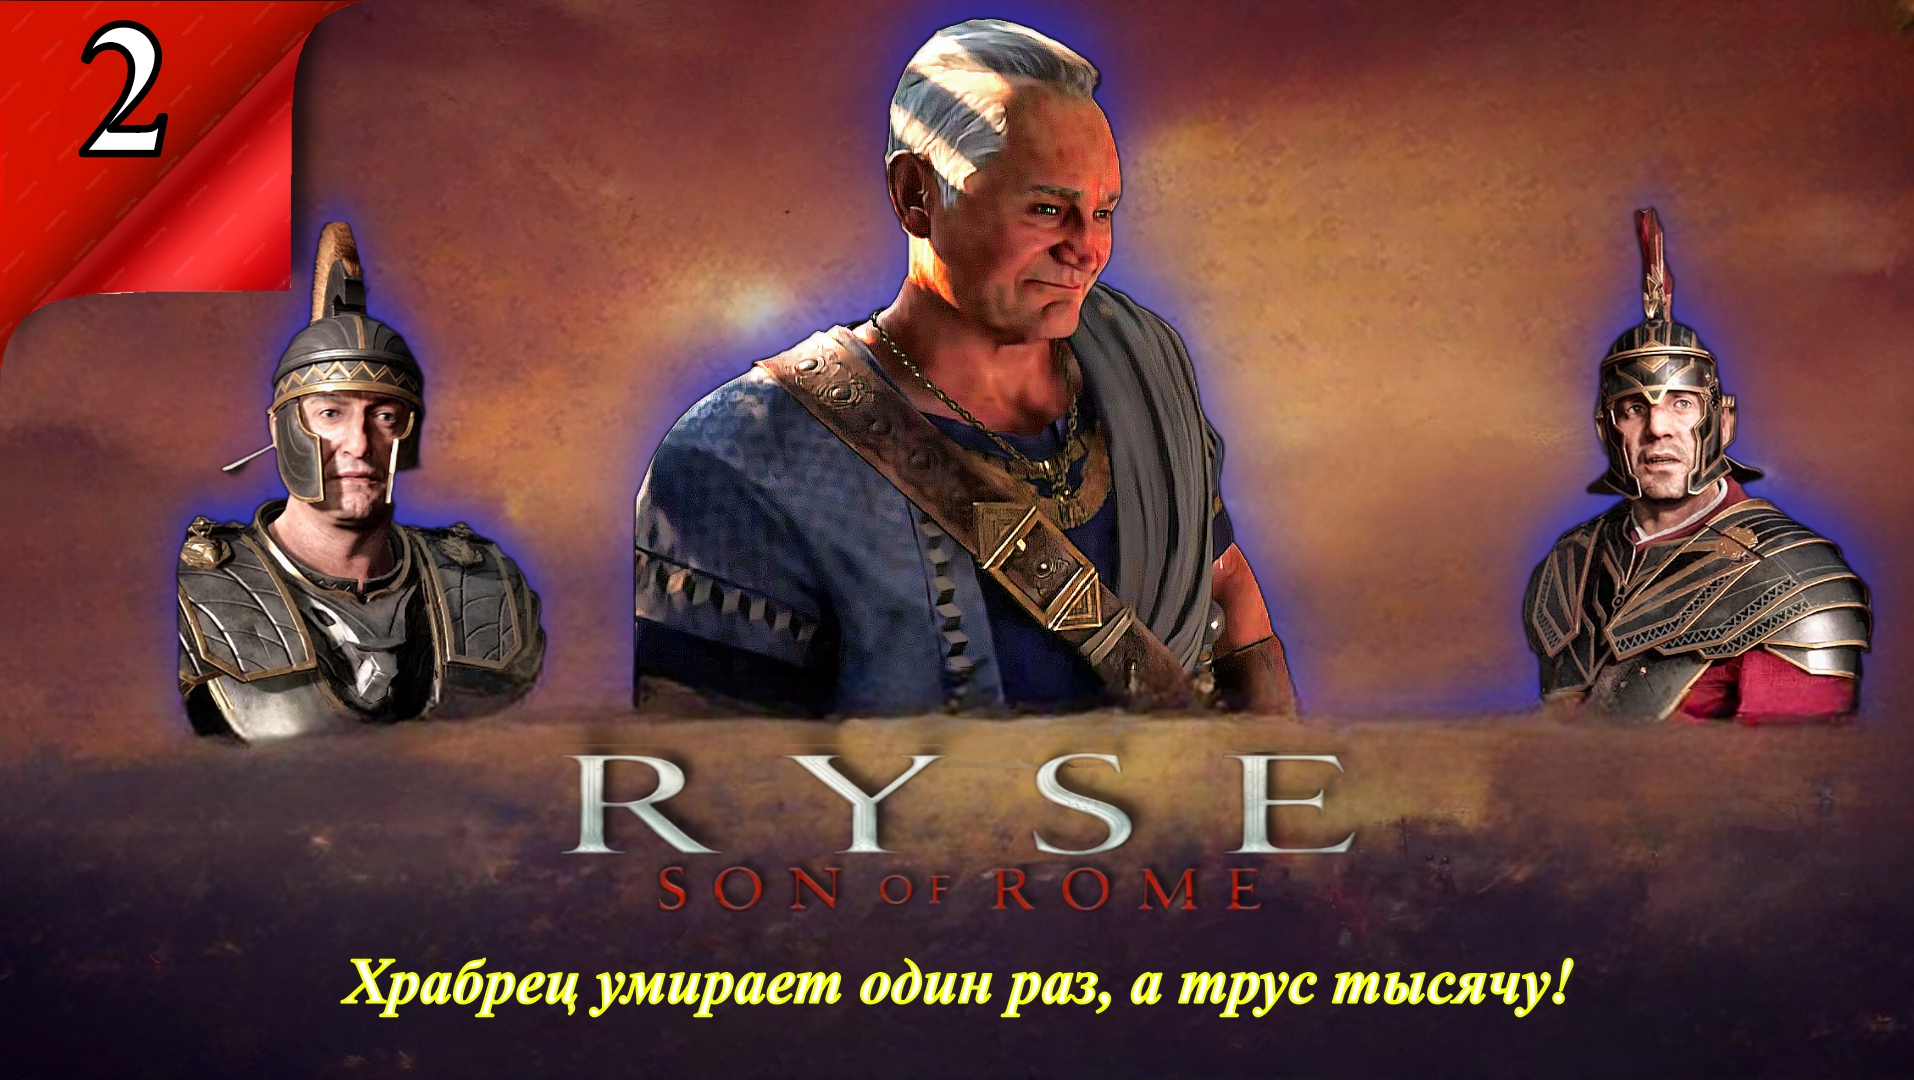 Ryse Son of Rome 14 Легион Храбрец умирает один раз, а трус тысячу! - Прохождение. Часть 2